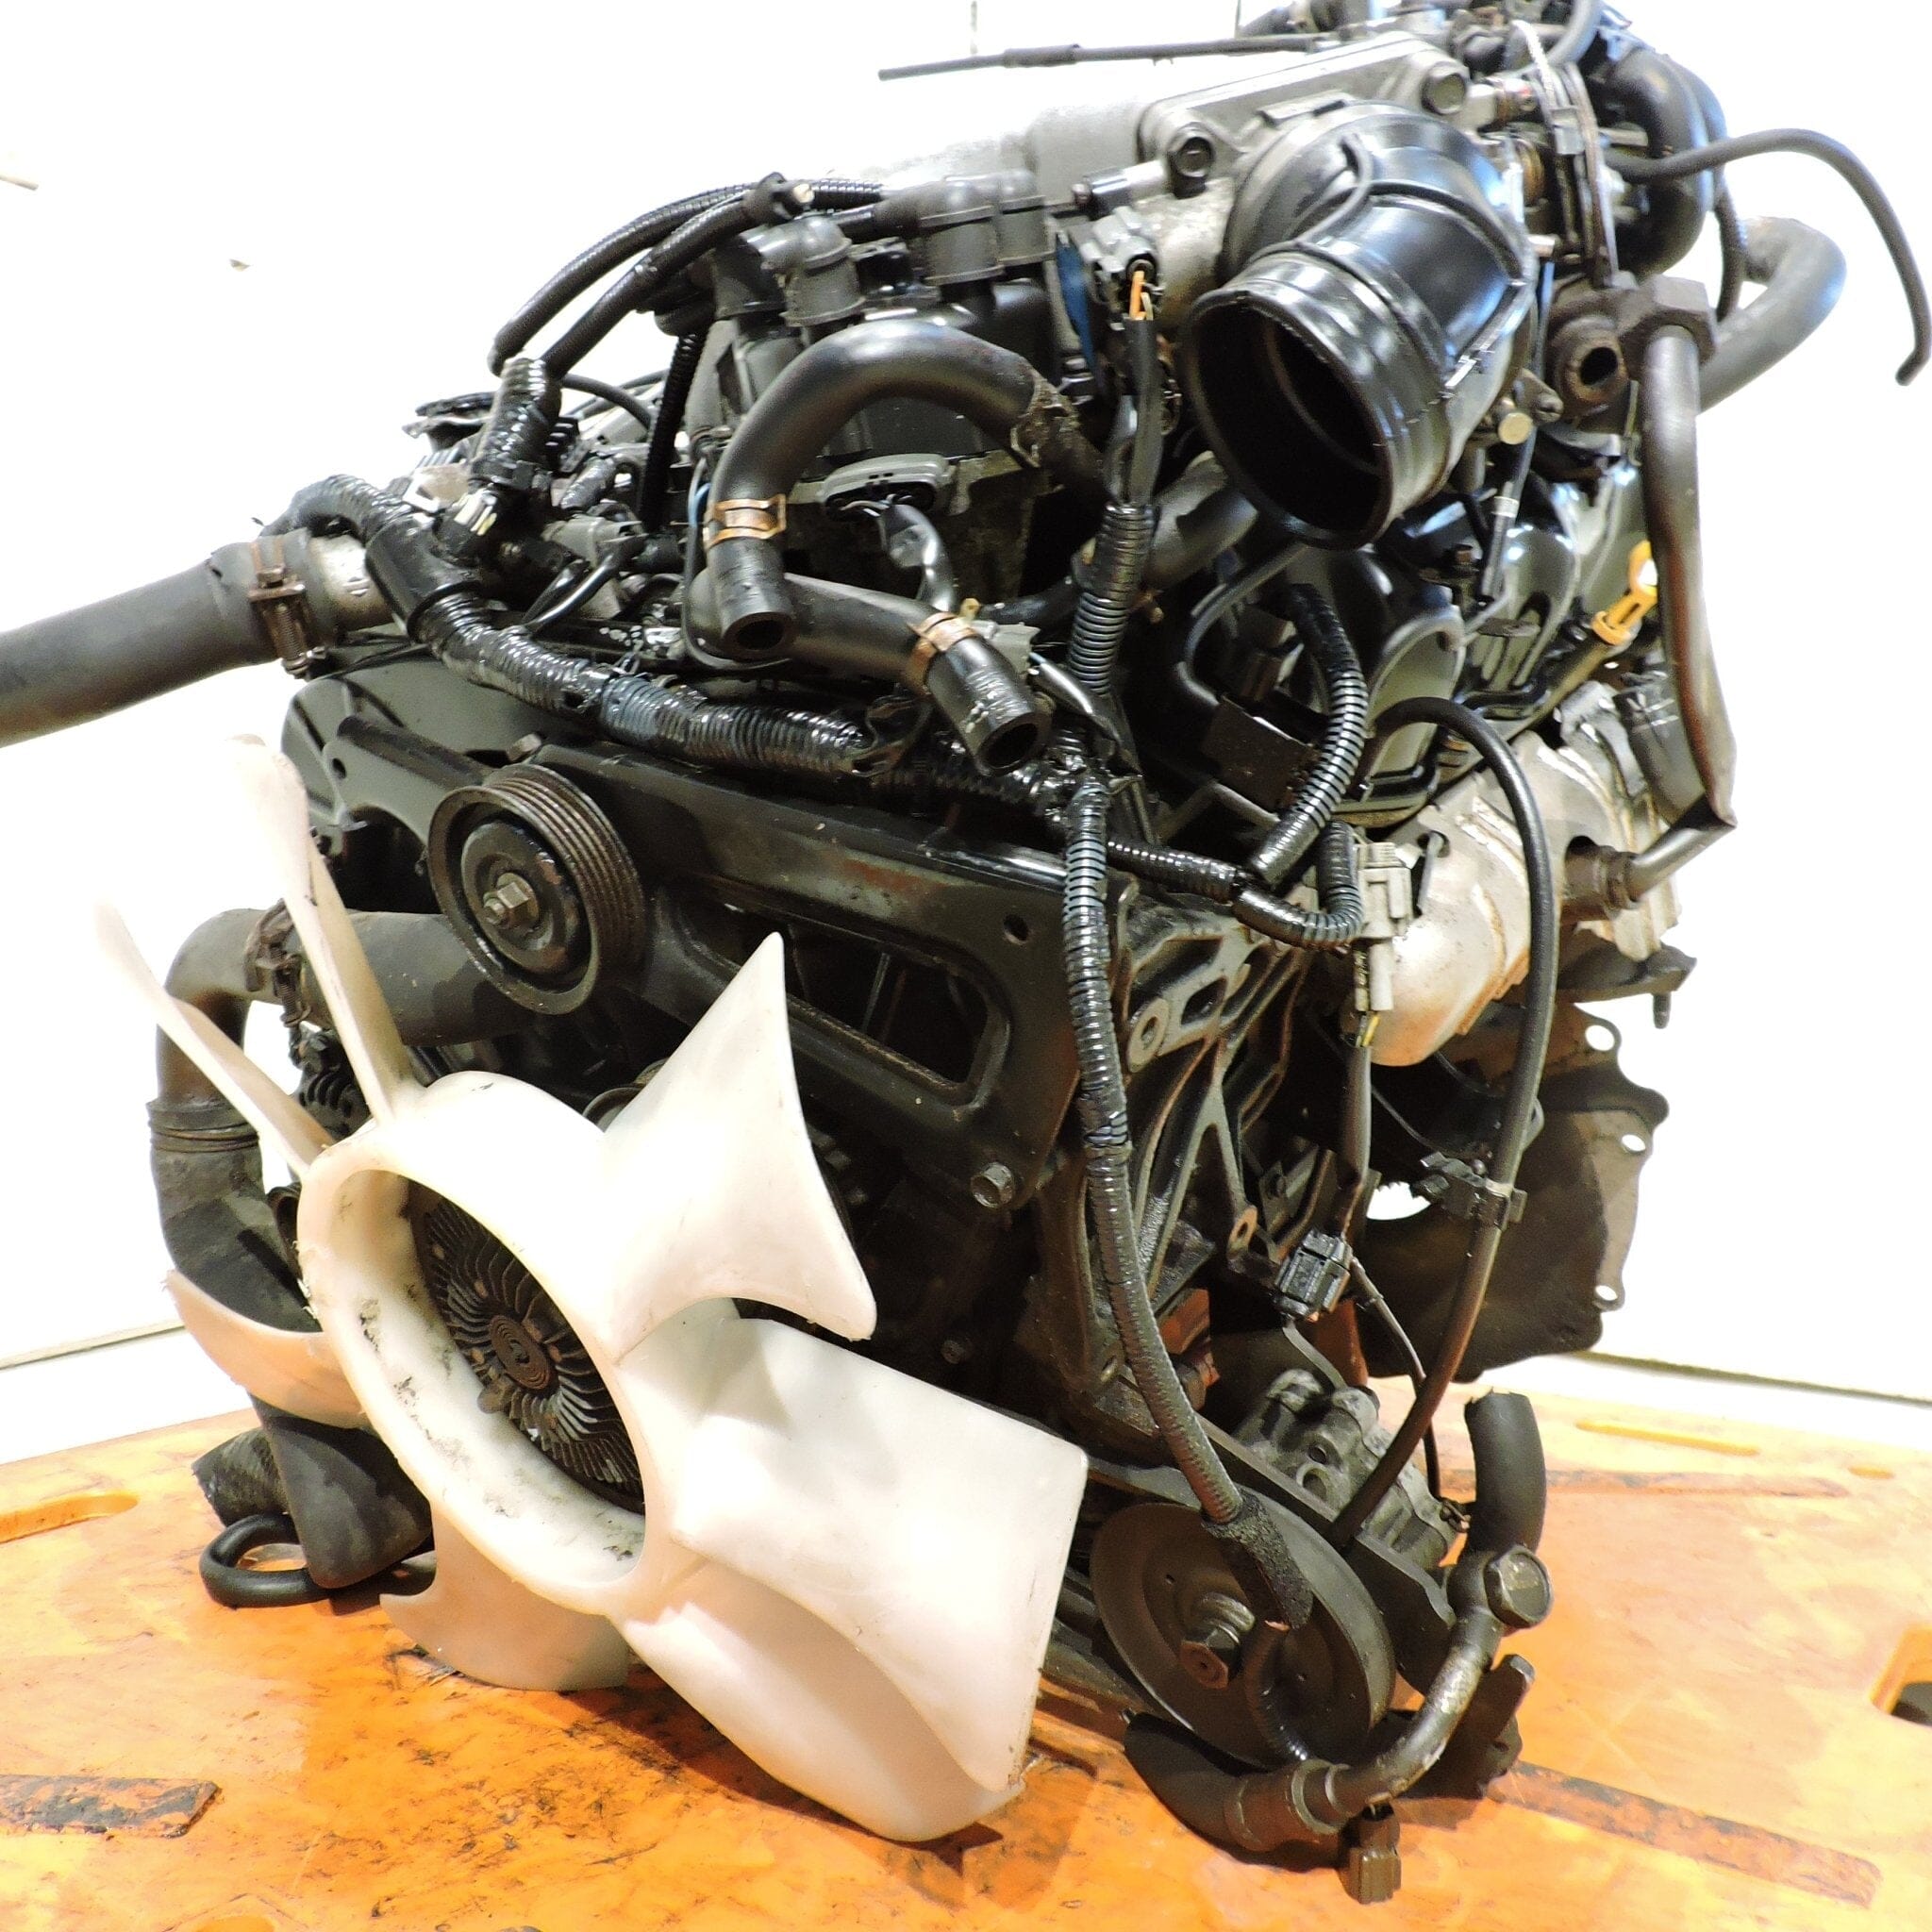 Nissan Pathfinder 1996-2000 3.3L JDM Engine - VG33E 6 Cylinder